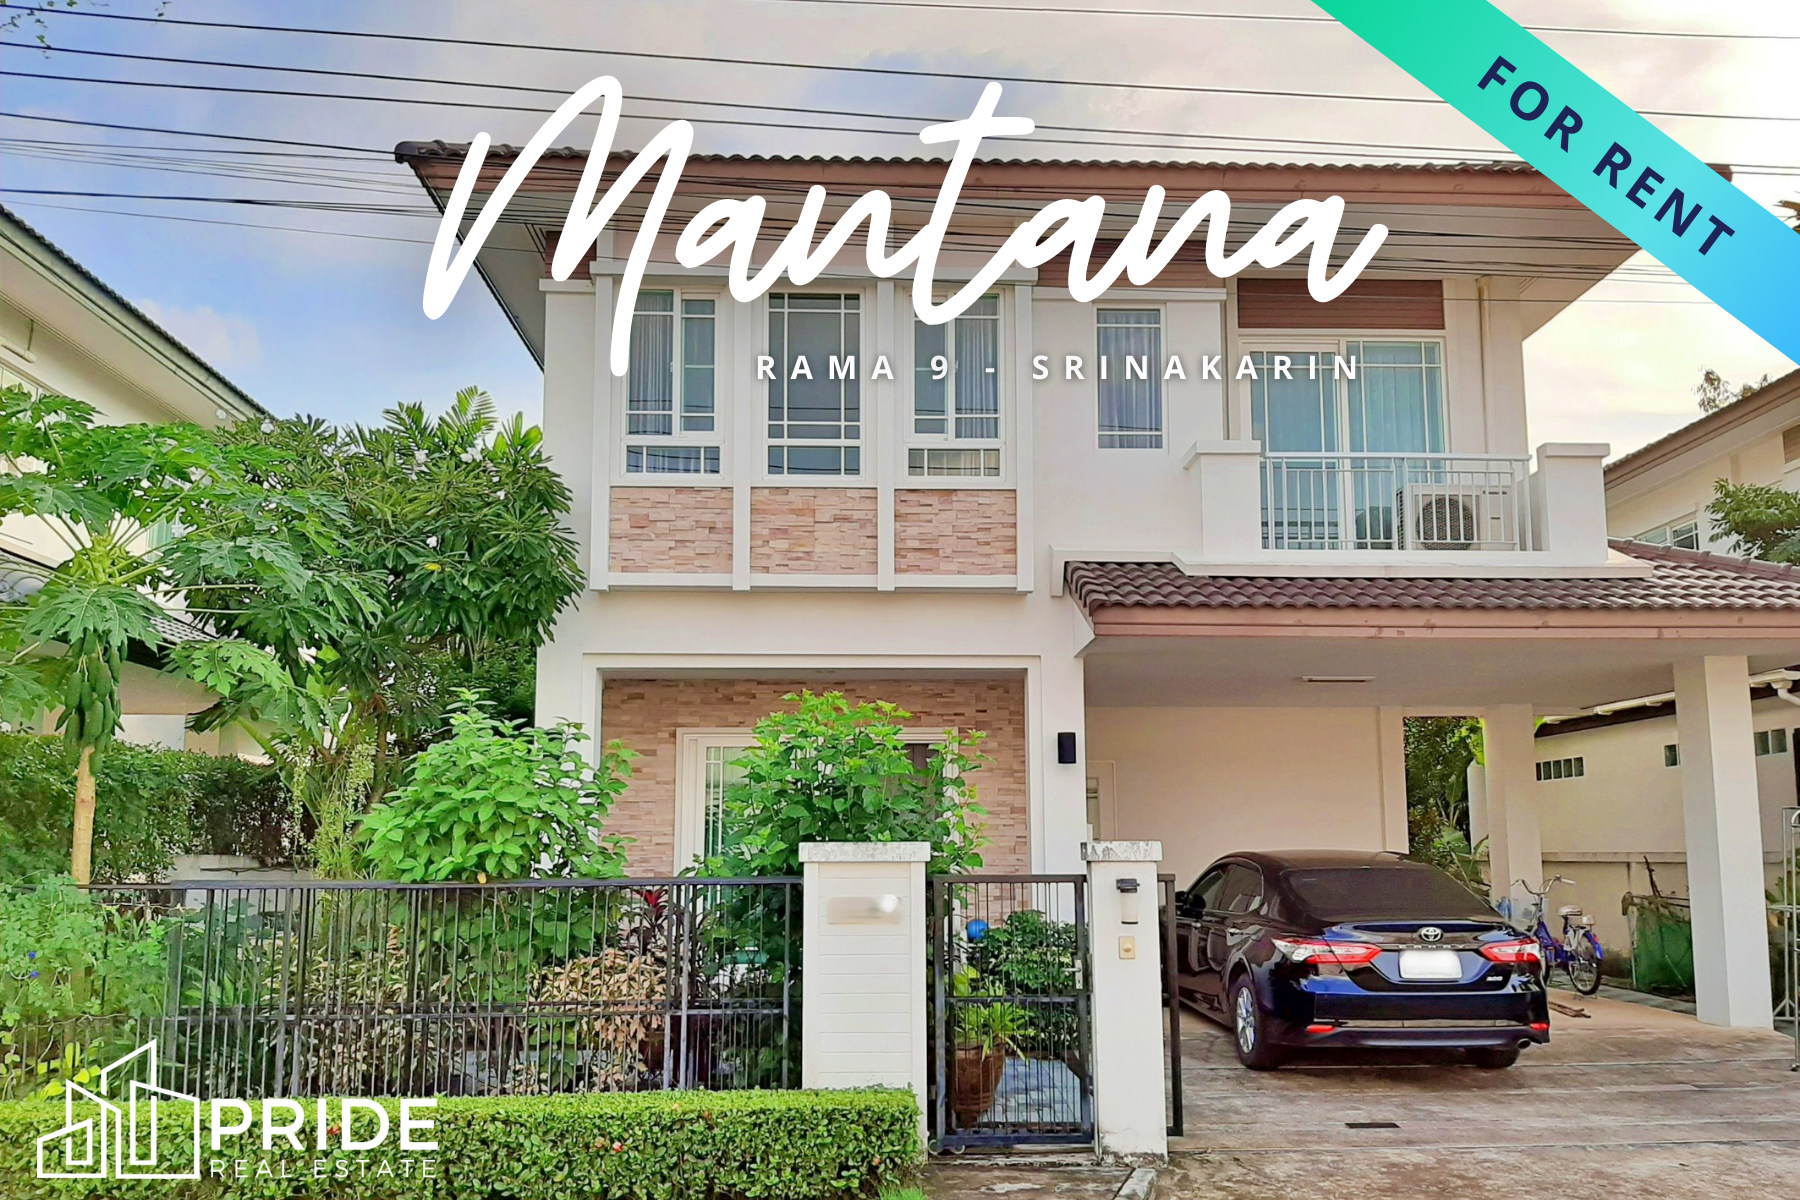 ให้เช่าบ้านเดี่ยว โครงการมัณฑนา พระราม 9 – ศรีนครินทร์ House For Rent Mantana Rama 9 – Srinakarin